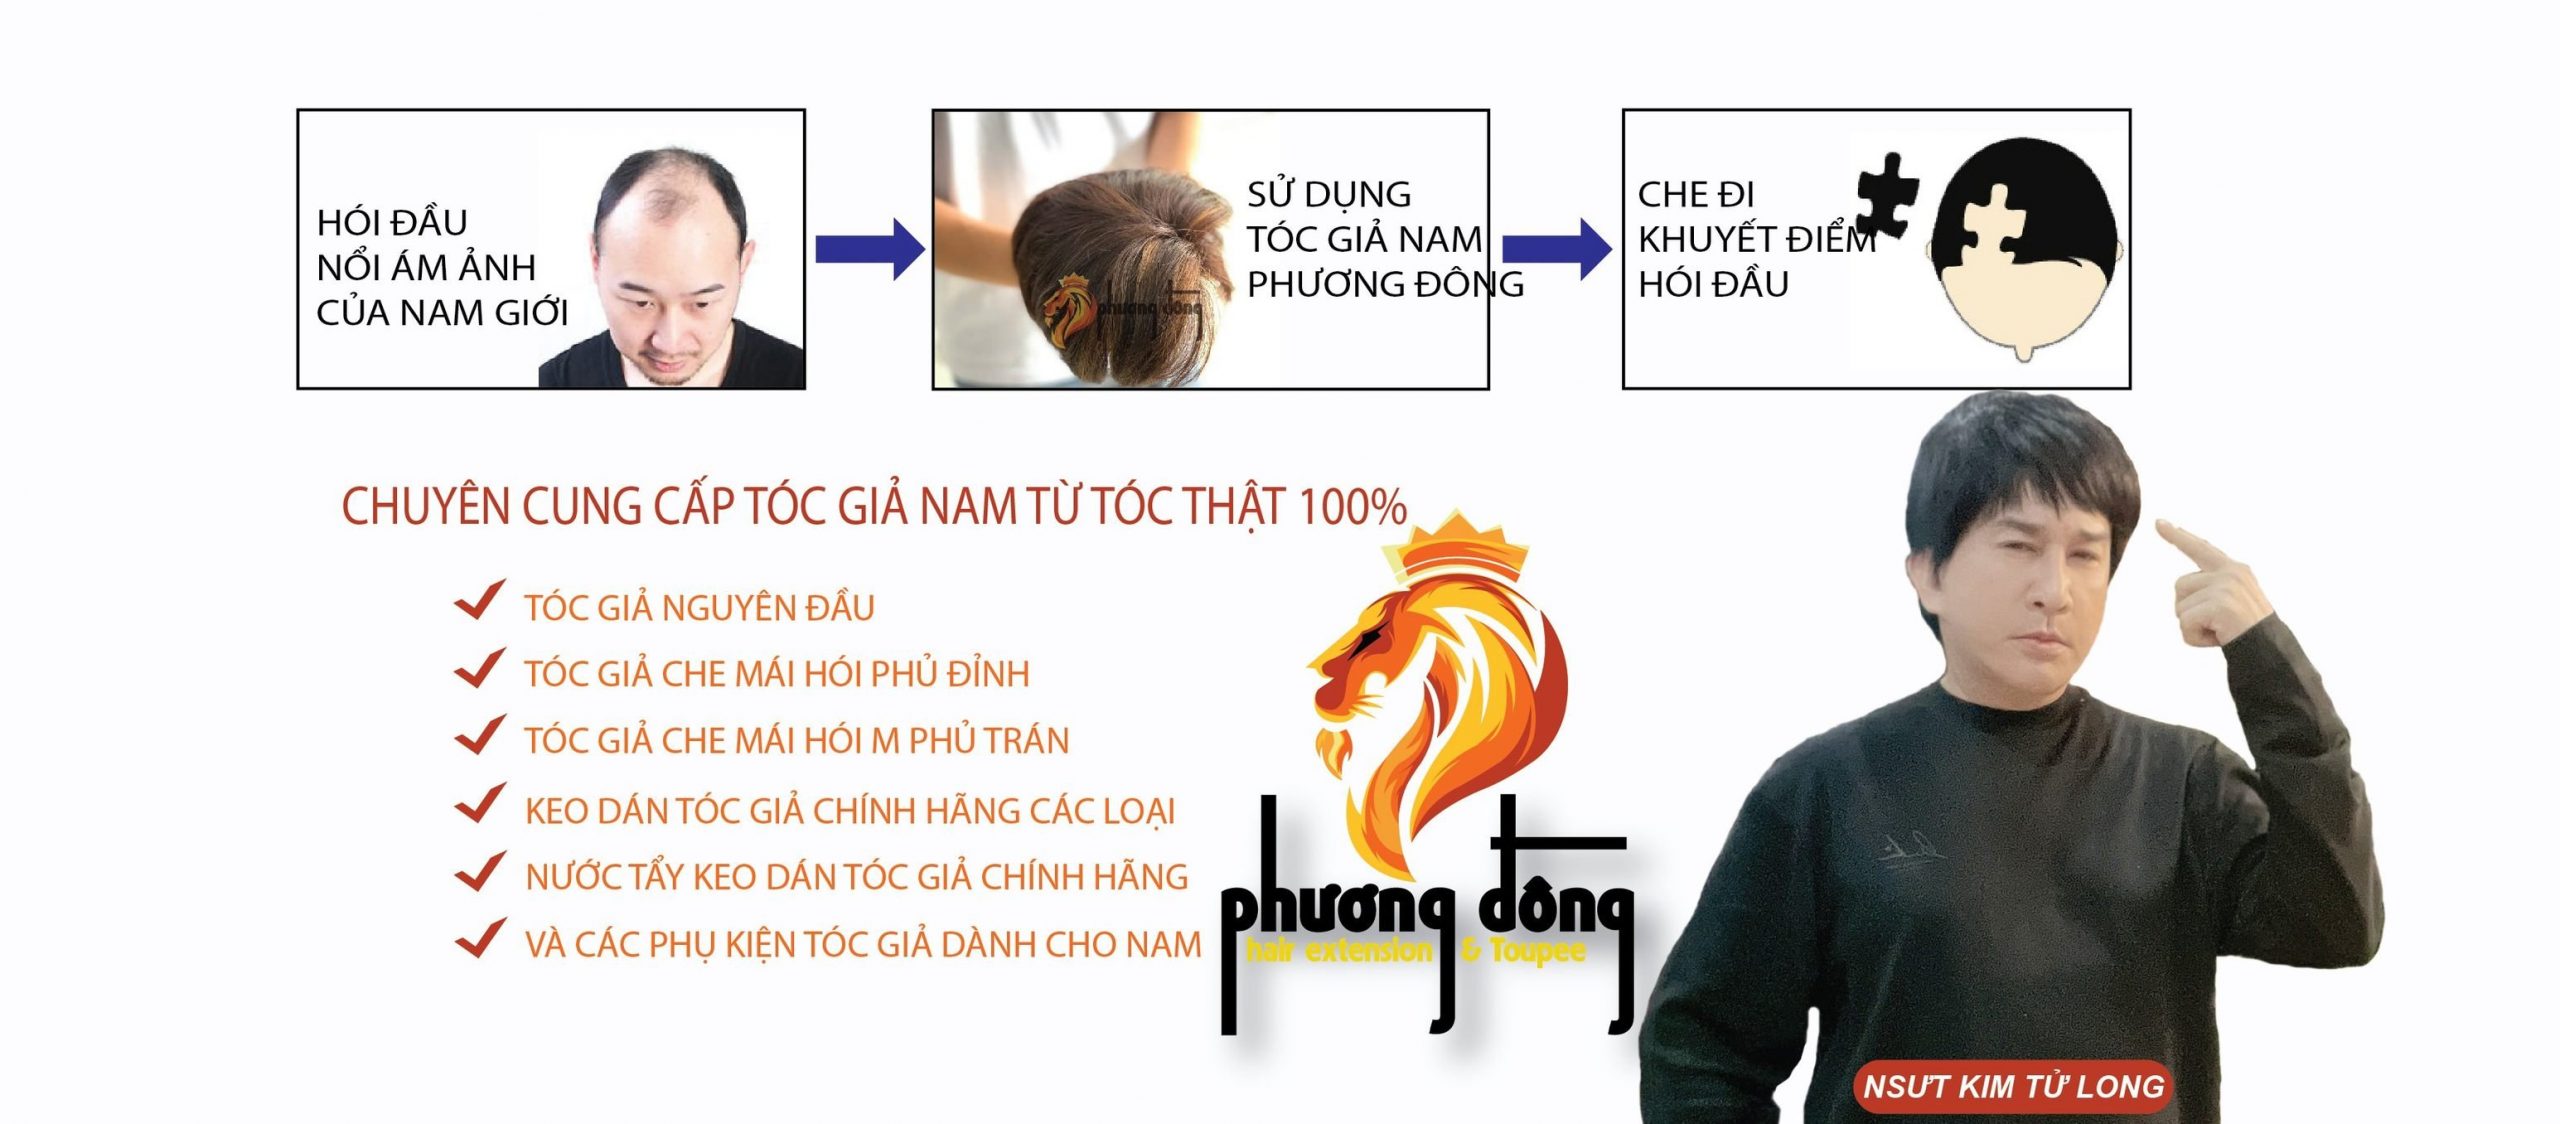 Top 10 cửa hàng bán tóc giả chất lượng tại Hà Nội  Toplistvn